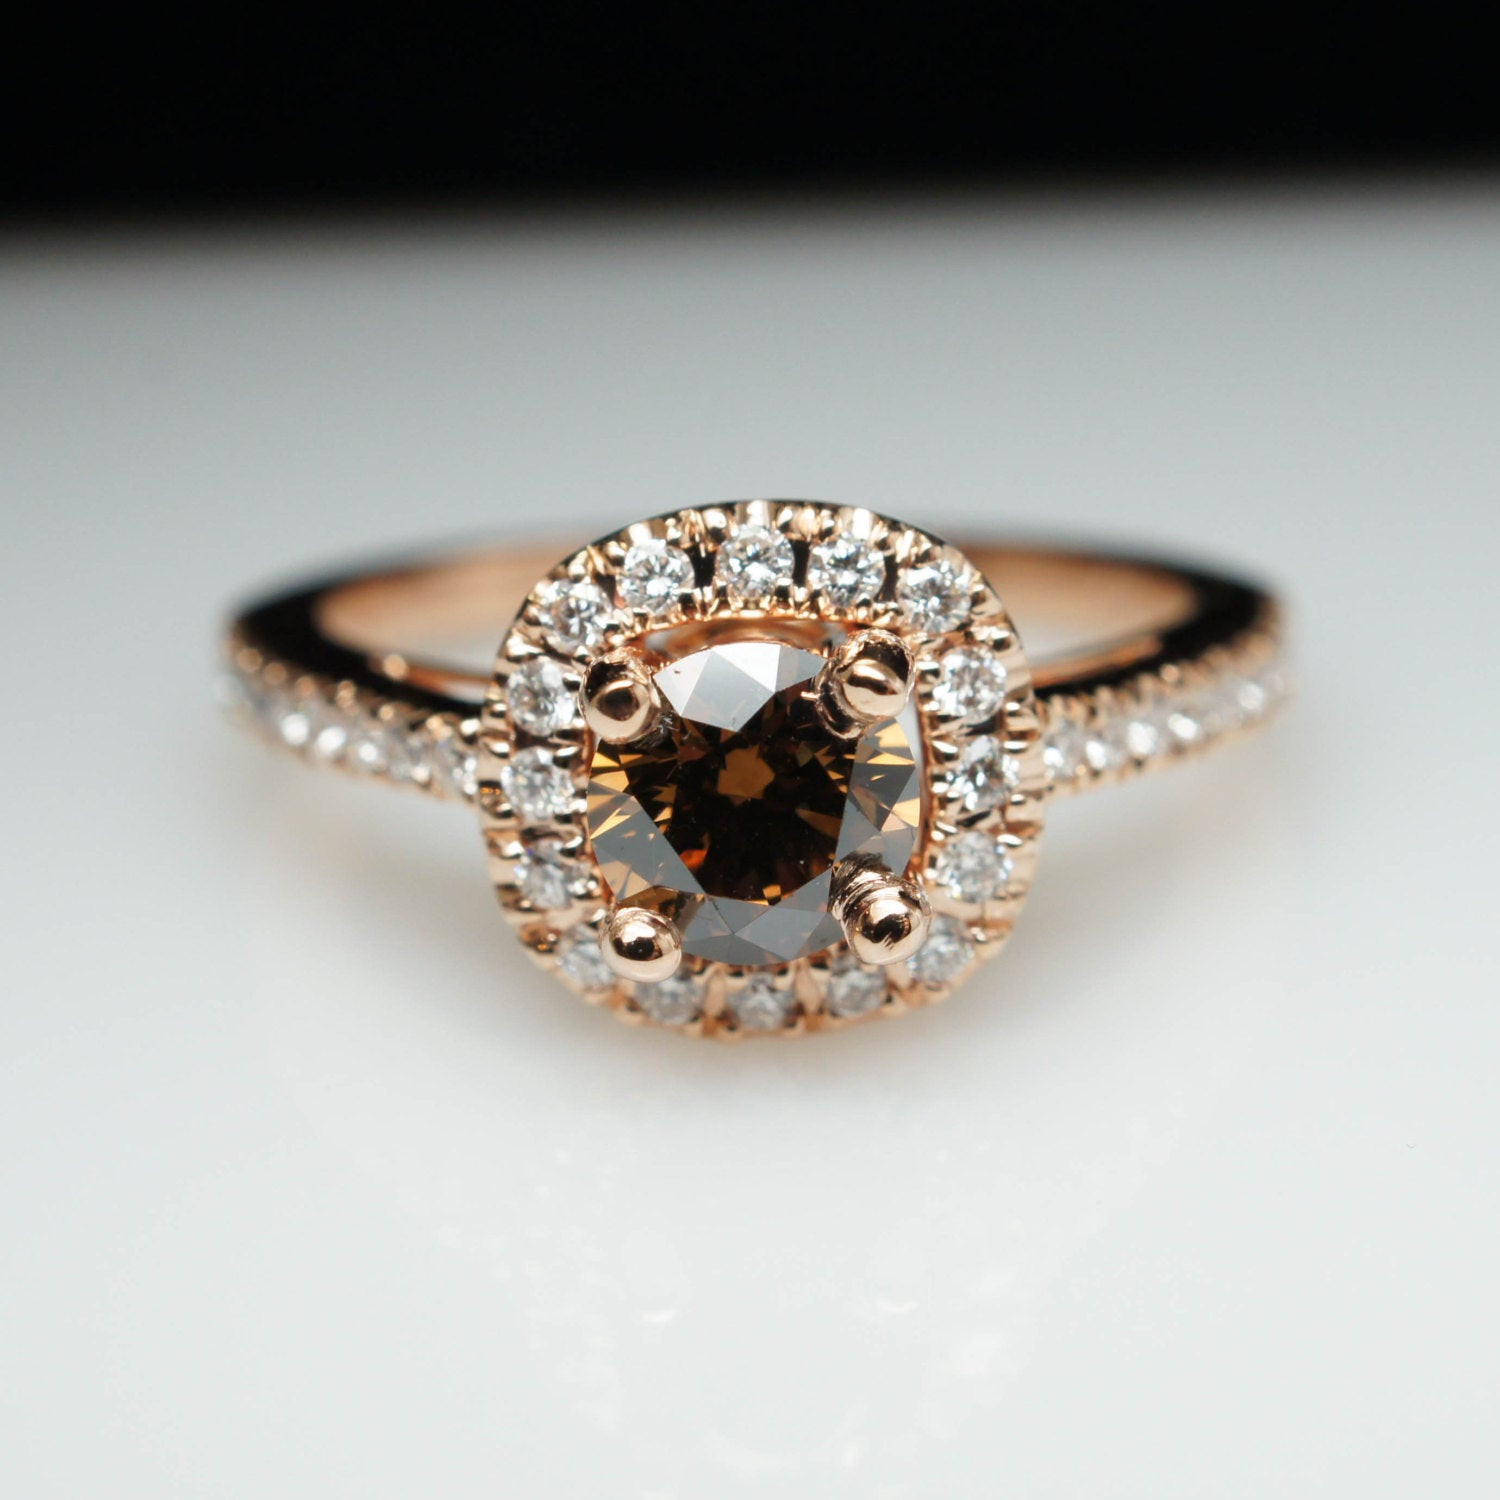 Brown Diamond Engagement Rings
 Unique Cognac Brown Diamond Engagement Ring in 14k Rose Gold